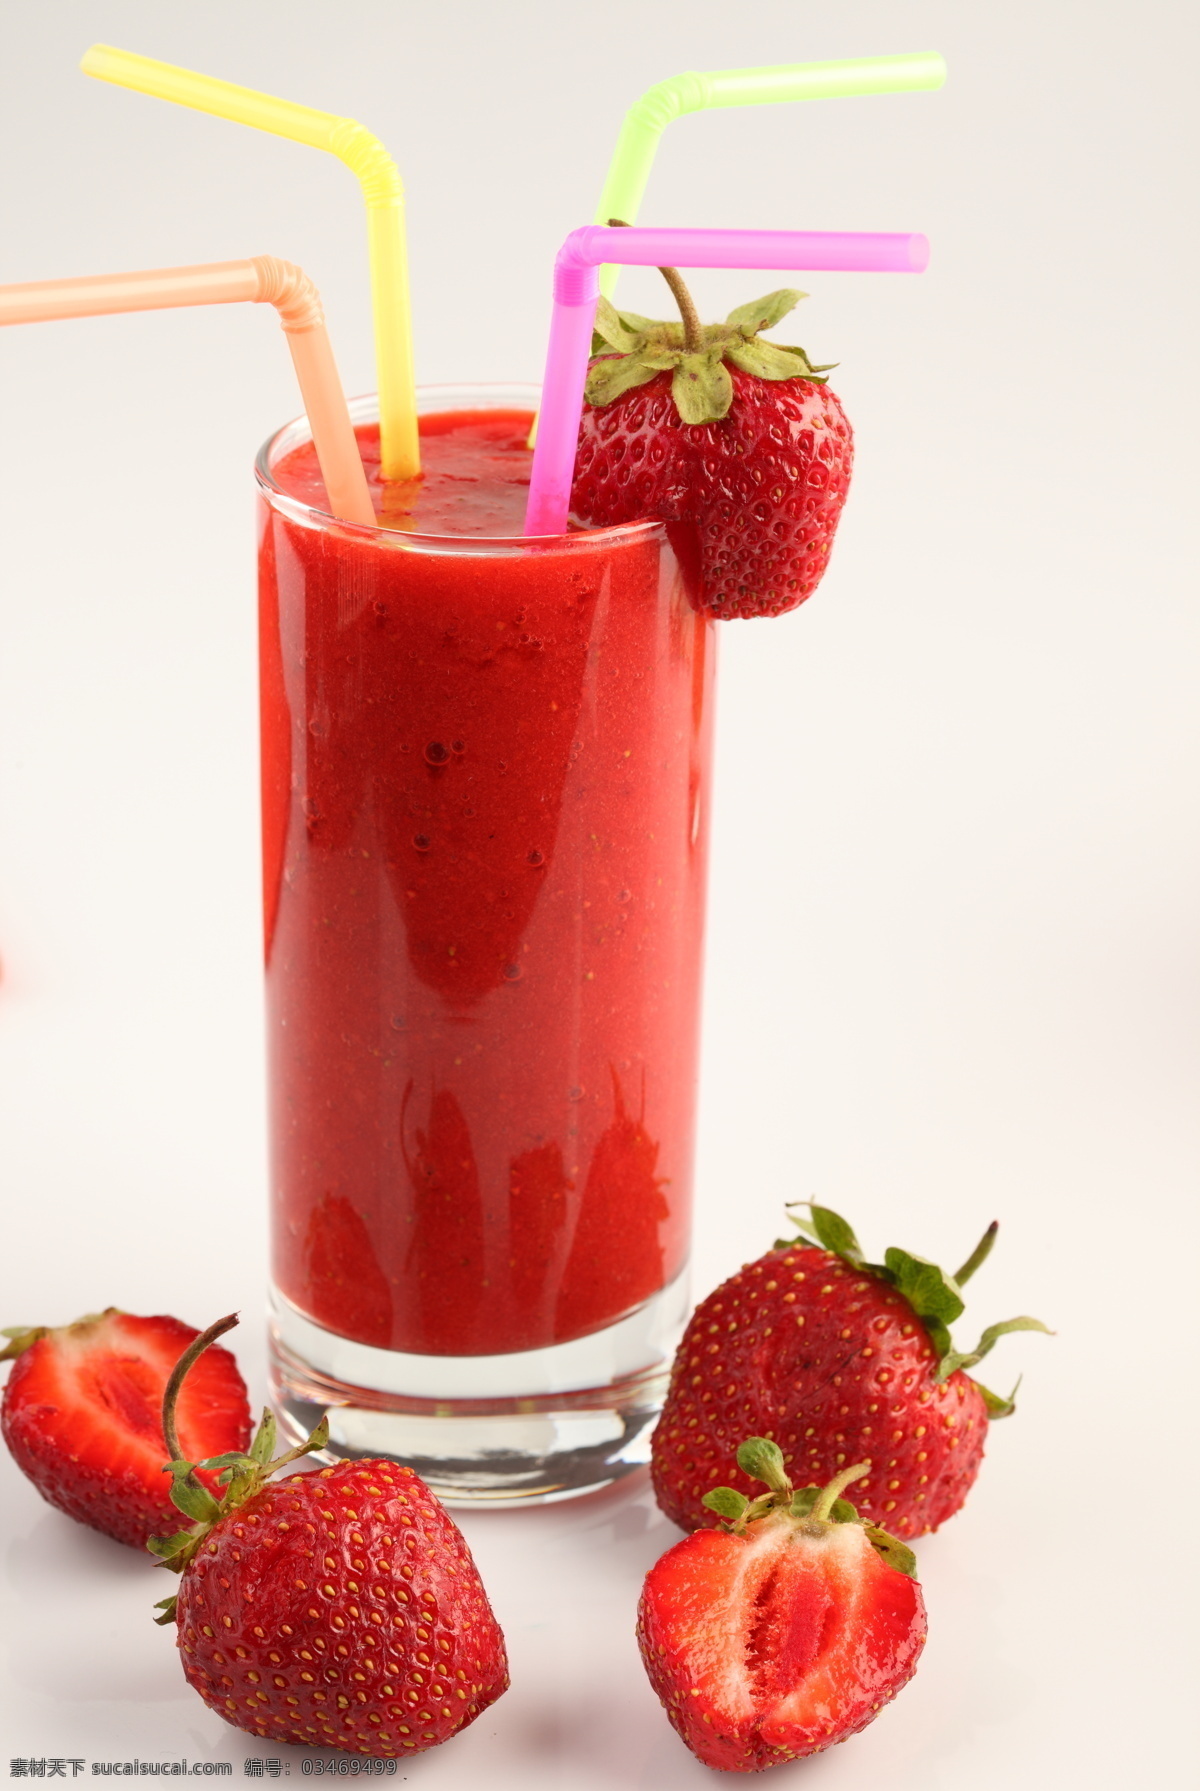 一杯 新鲜 草莓汁 果汁饮料 新鲜草莓 红色草莓 鲜嫩草莓 水果 一杯草莓汁 饮料 鲜红 高清图片 酒类图片 餐饮美食